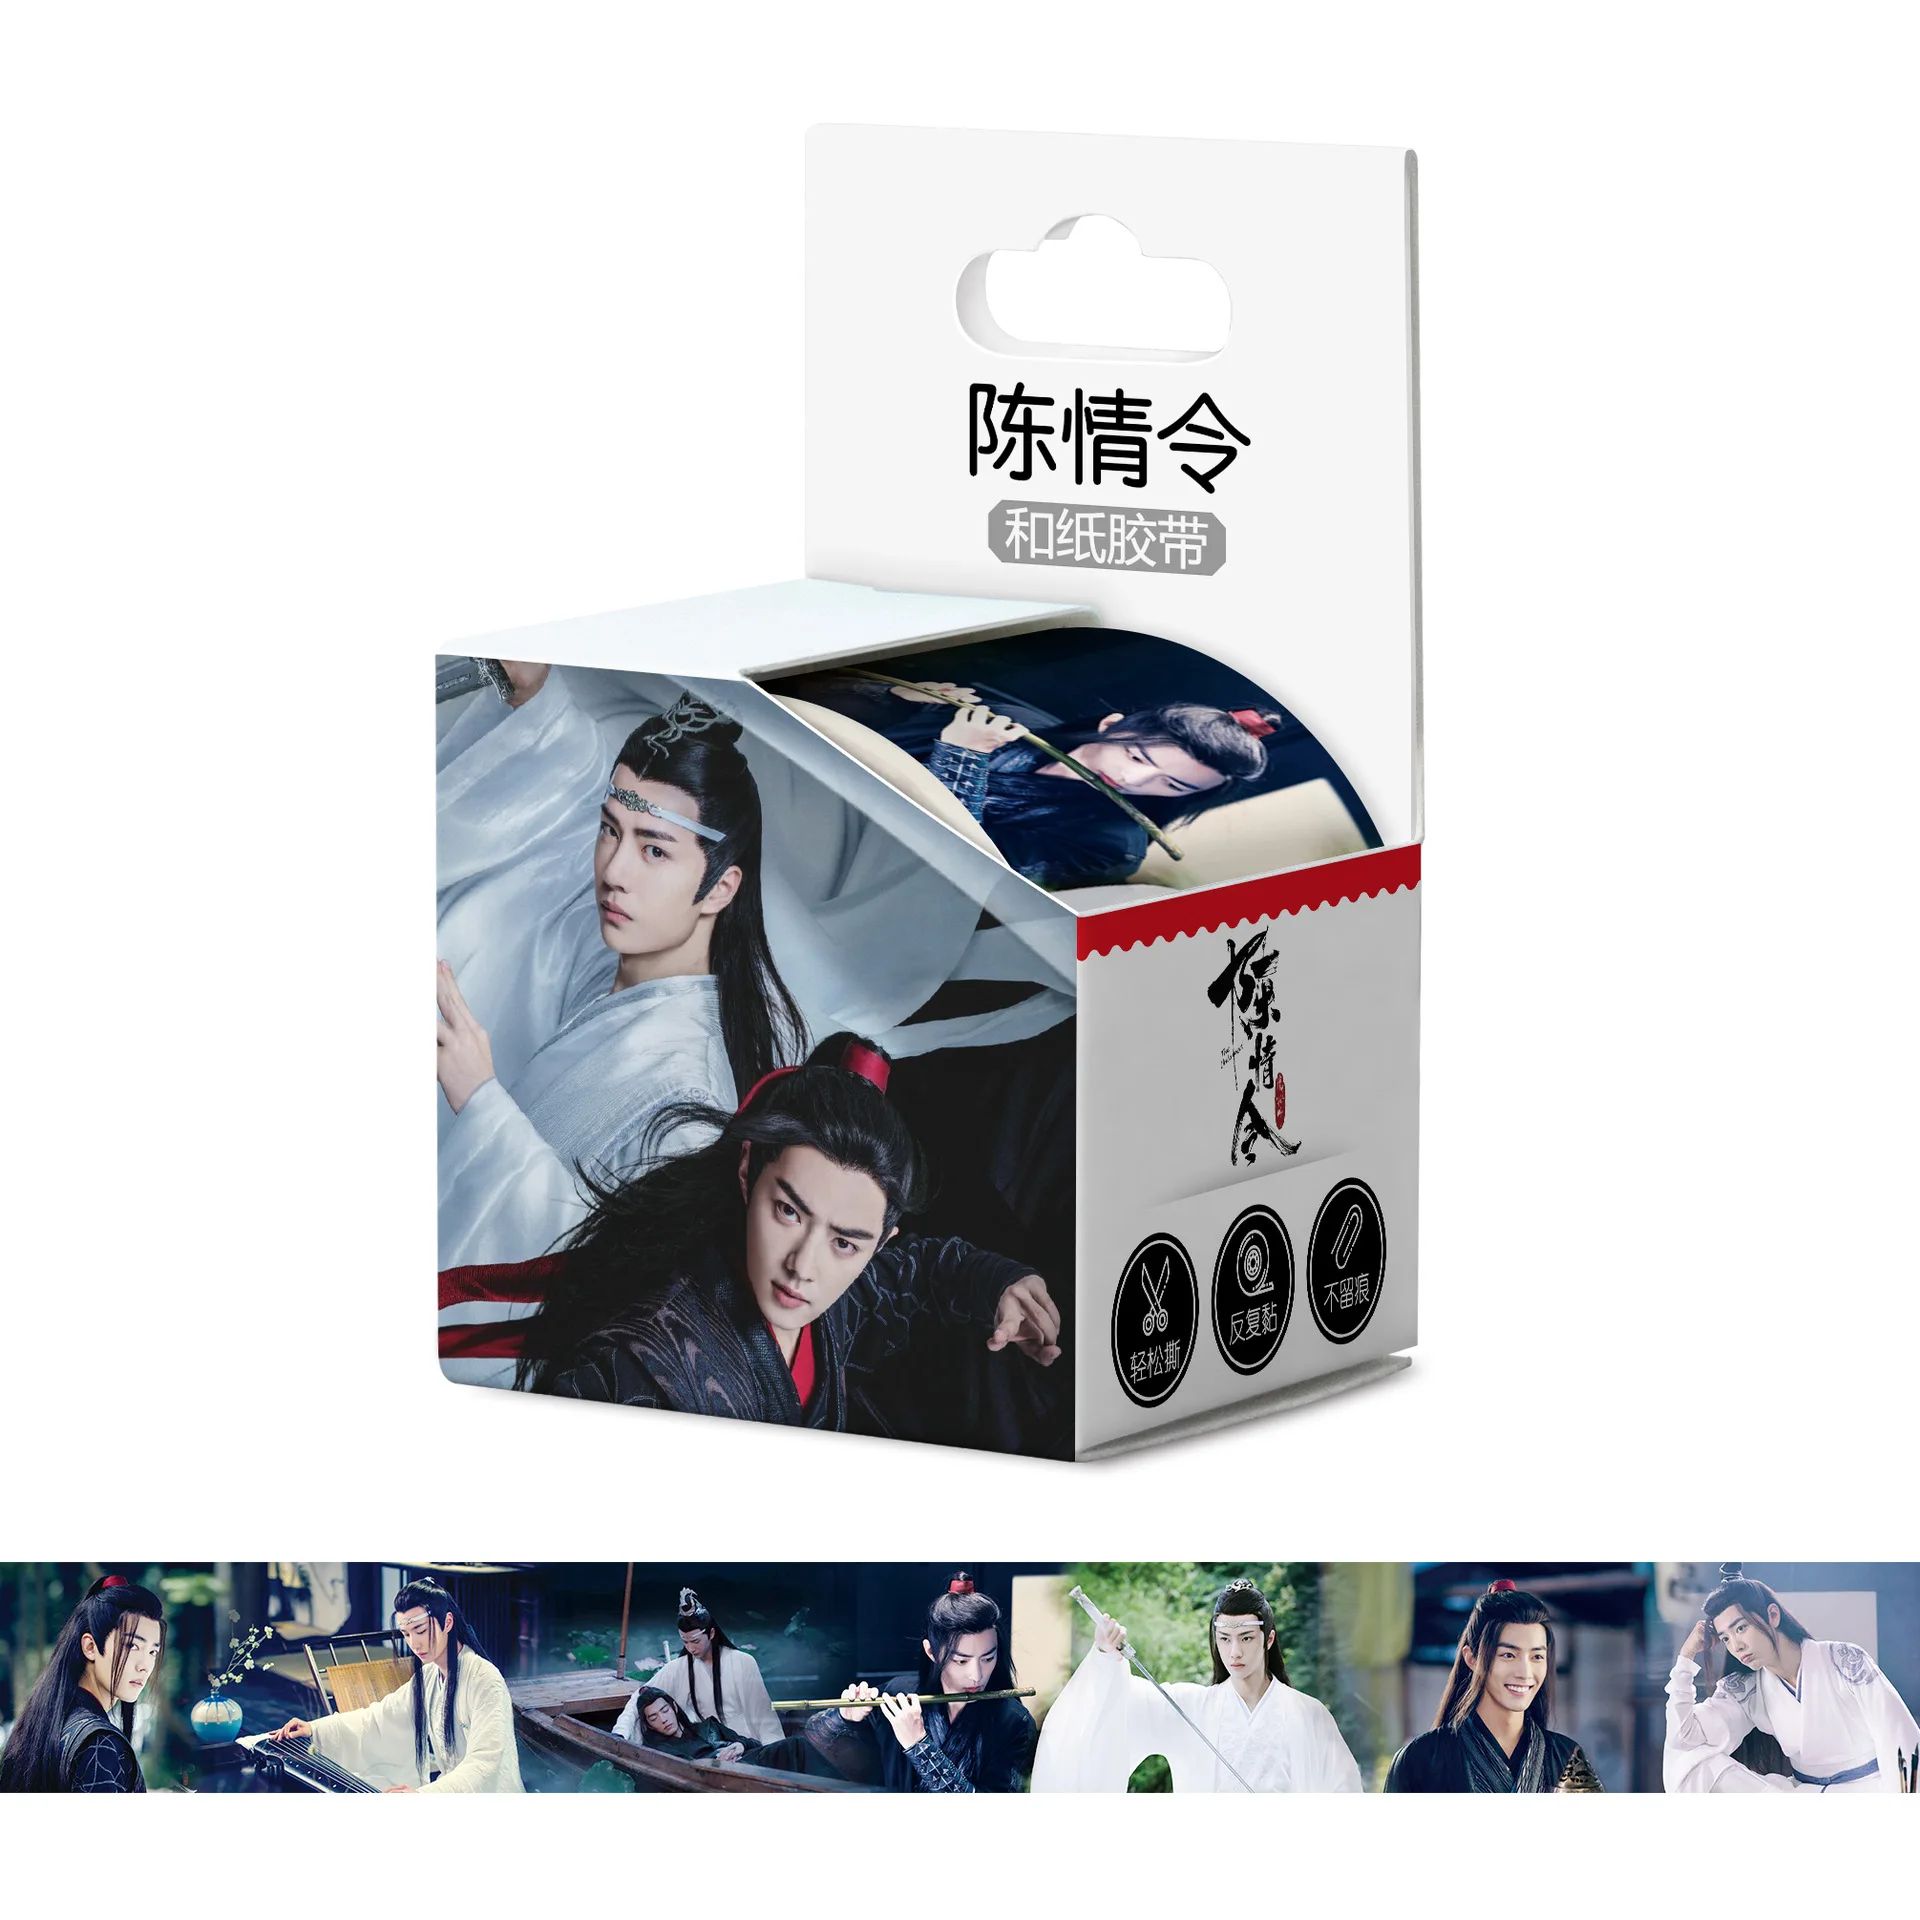 

4cm*5m Chen Qing Ling Washi Tape Adhesive Tape Xiao Zhan Wang Yibo Figure Masking Tape Scrapbooking Stickers Label